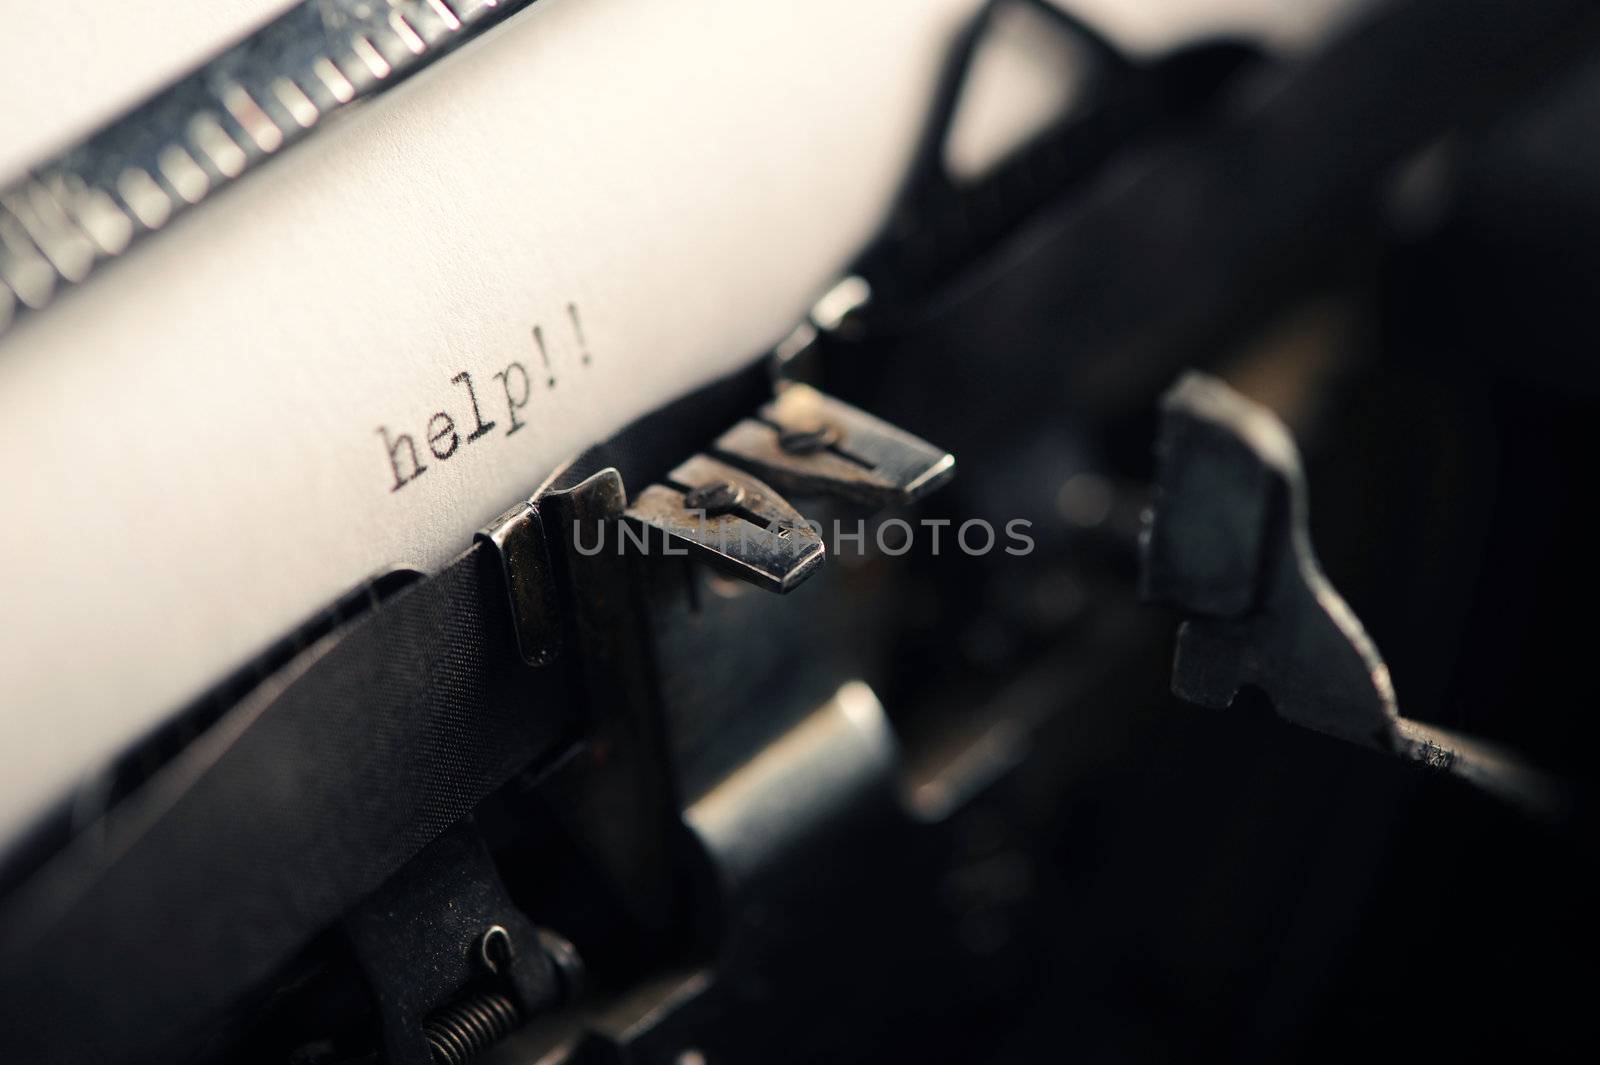 Old Typewriter:help message